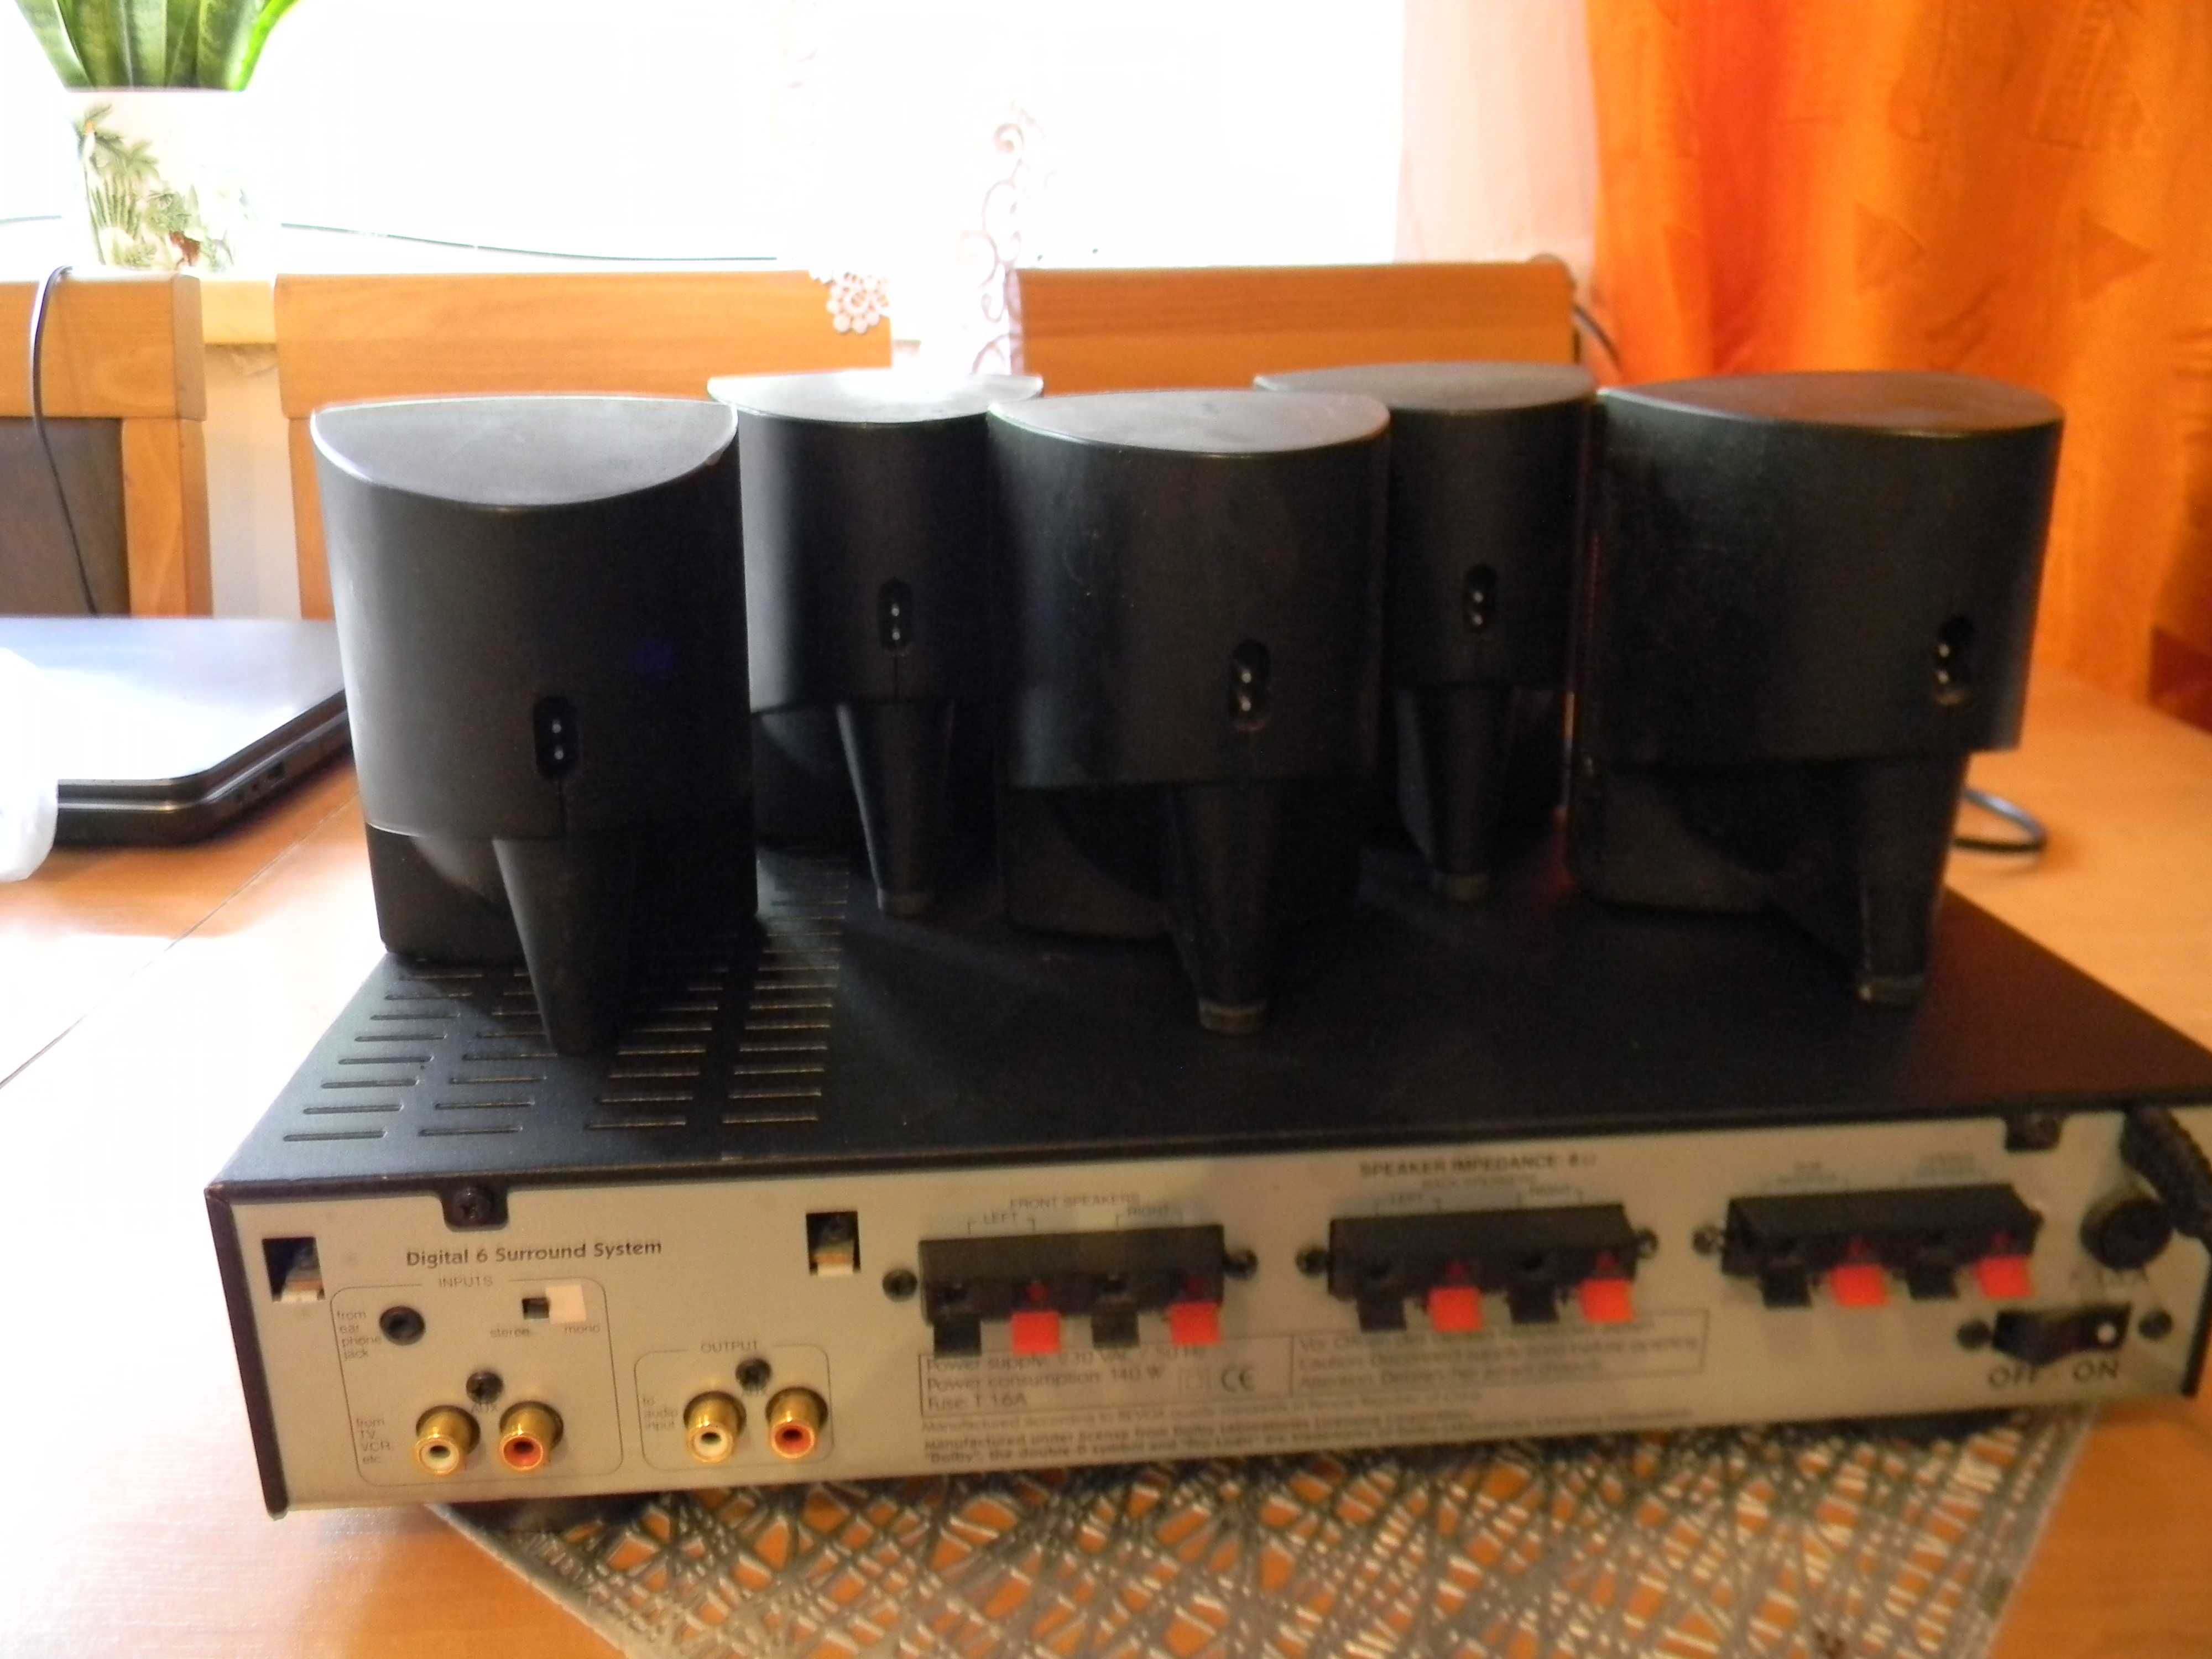 Procesor kina domowego CAMPUS by Revox z głośnikami UBL.